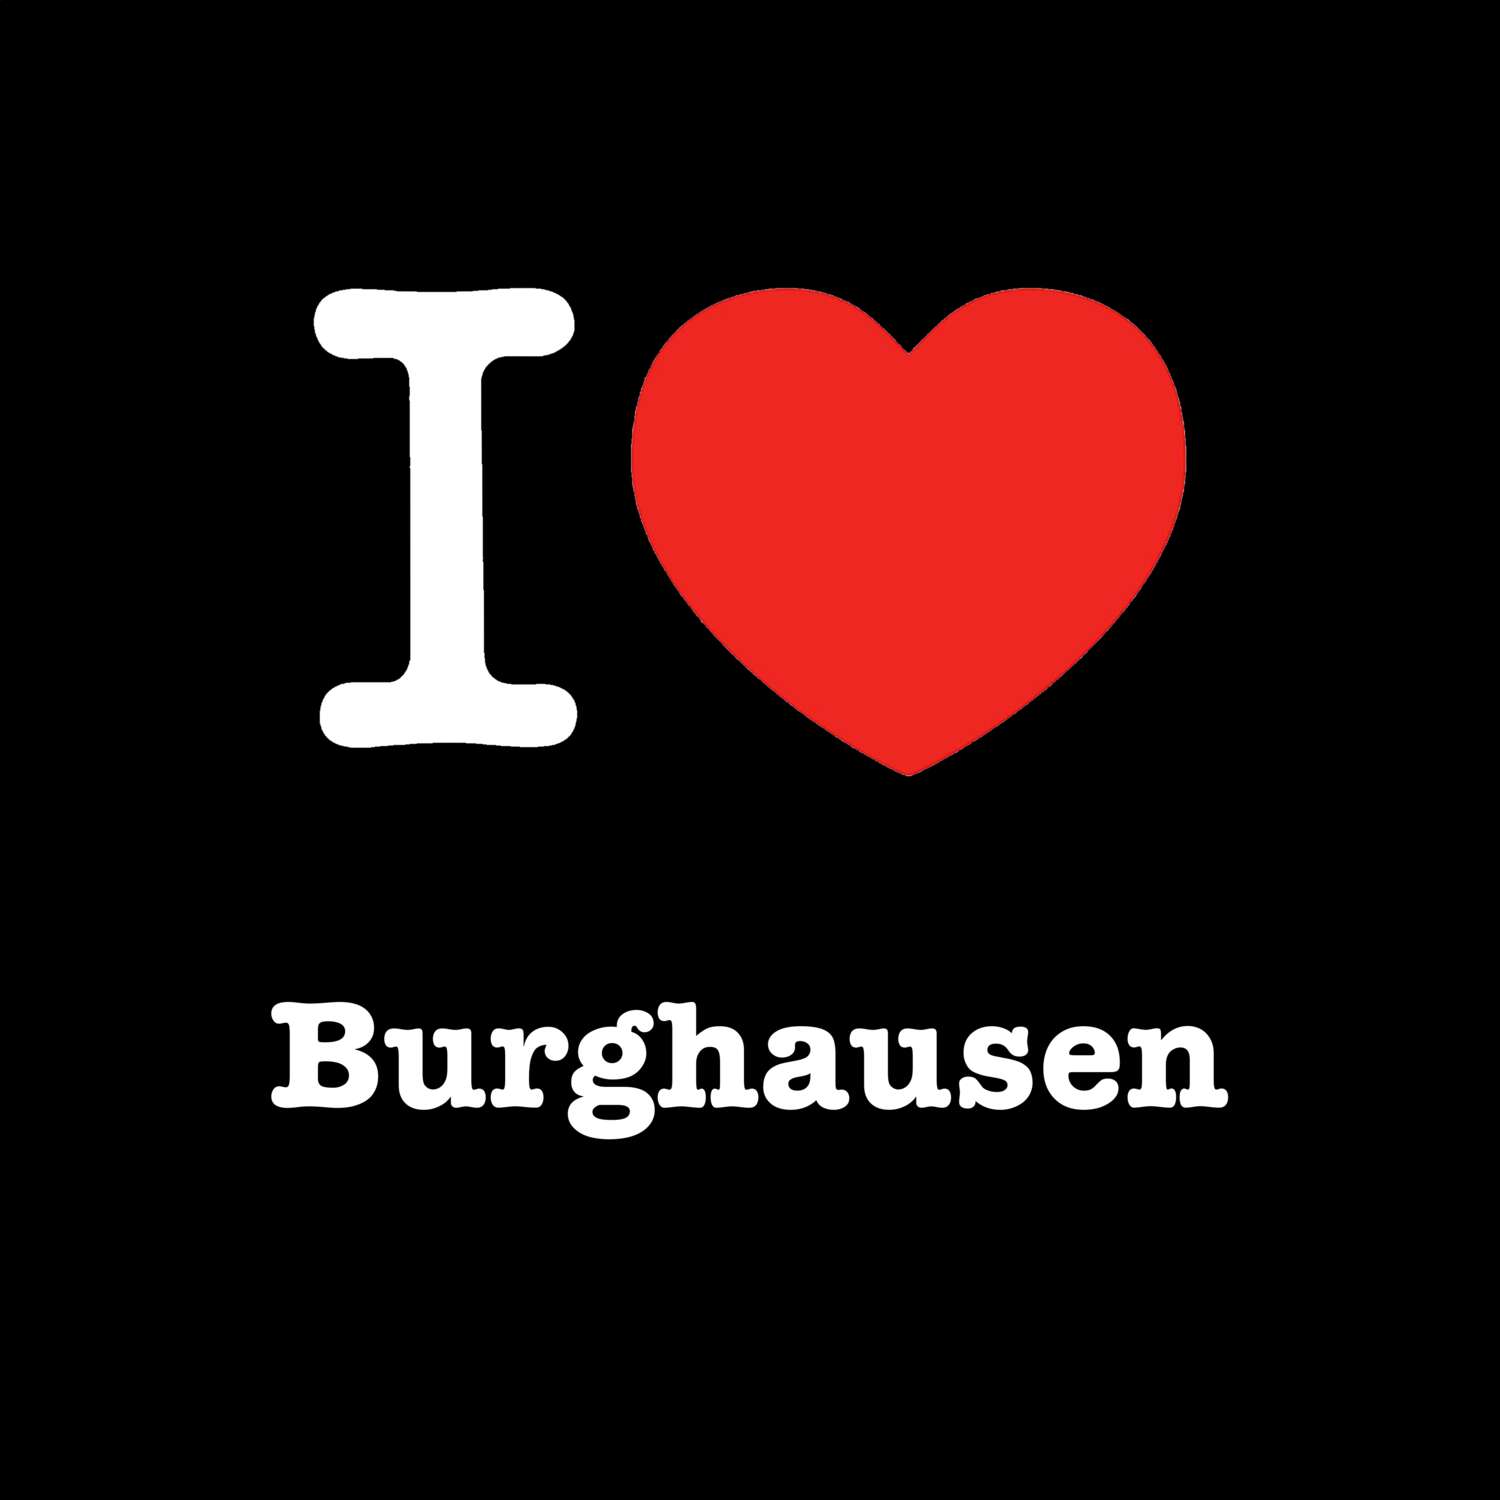 Burghausen T-Shirt »I love«